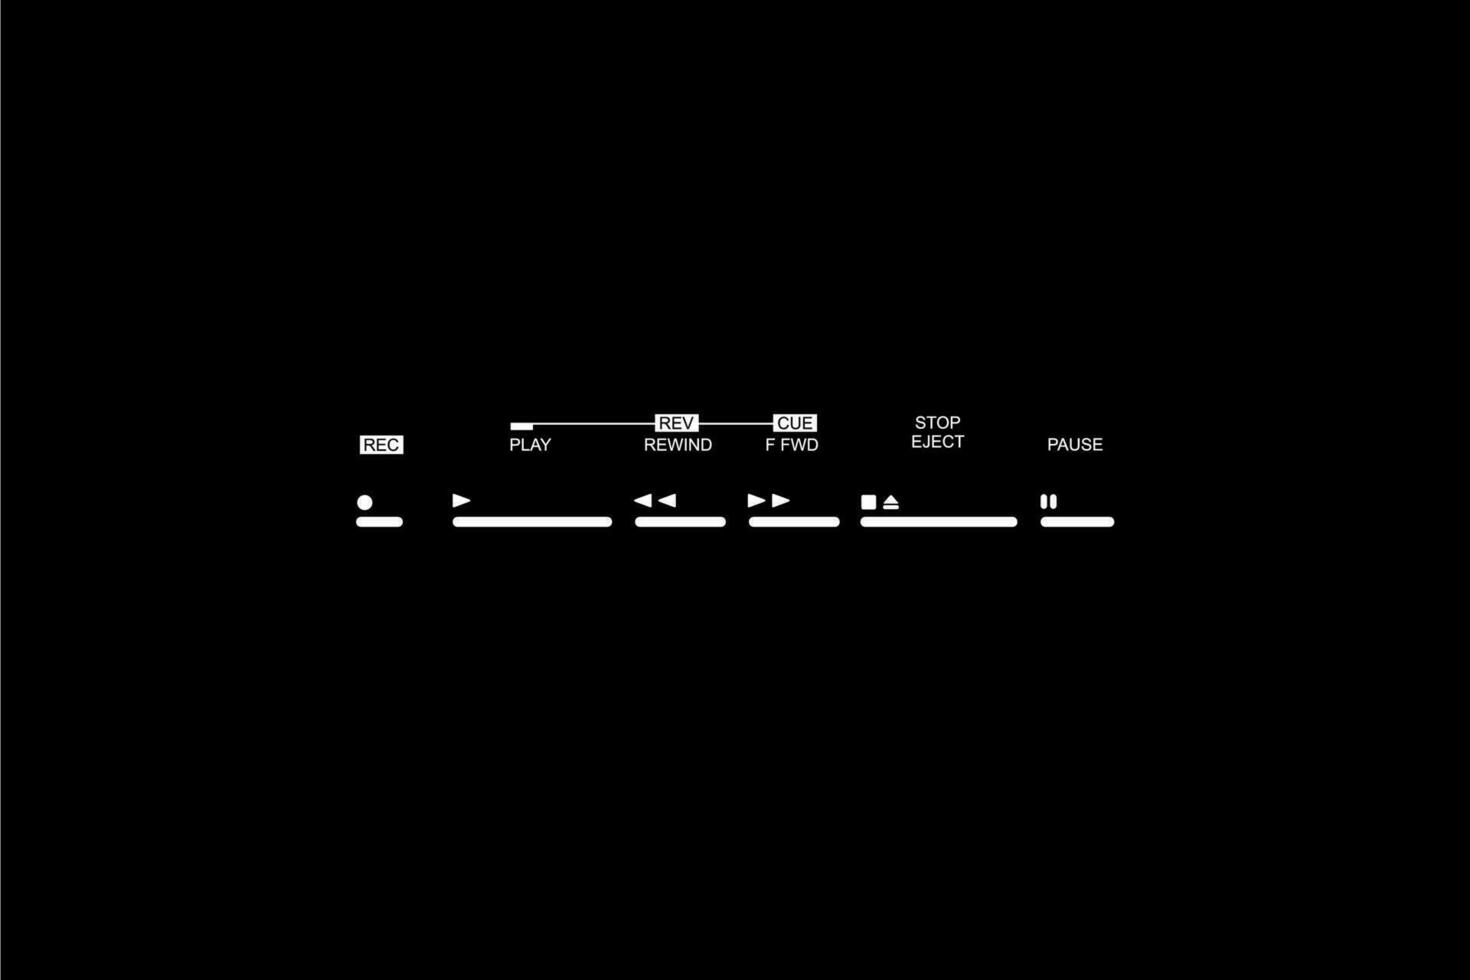 silhouette de le ruban plate-forme boutons, enregistrements, jouer, rapide, avant, rembobiner, arrêt, éjecter, et pause. vecteur illustration